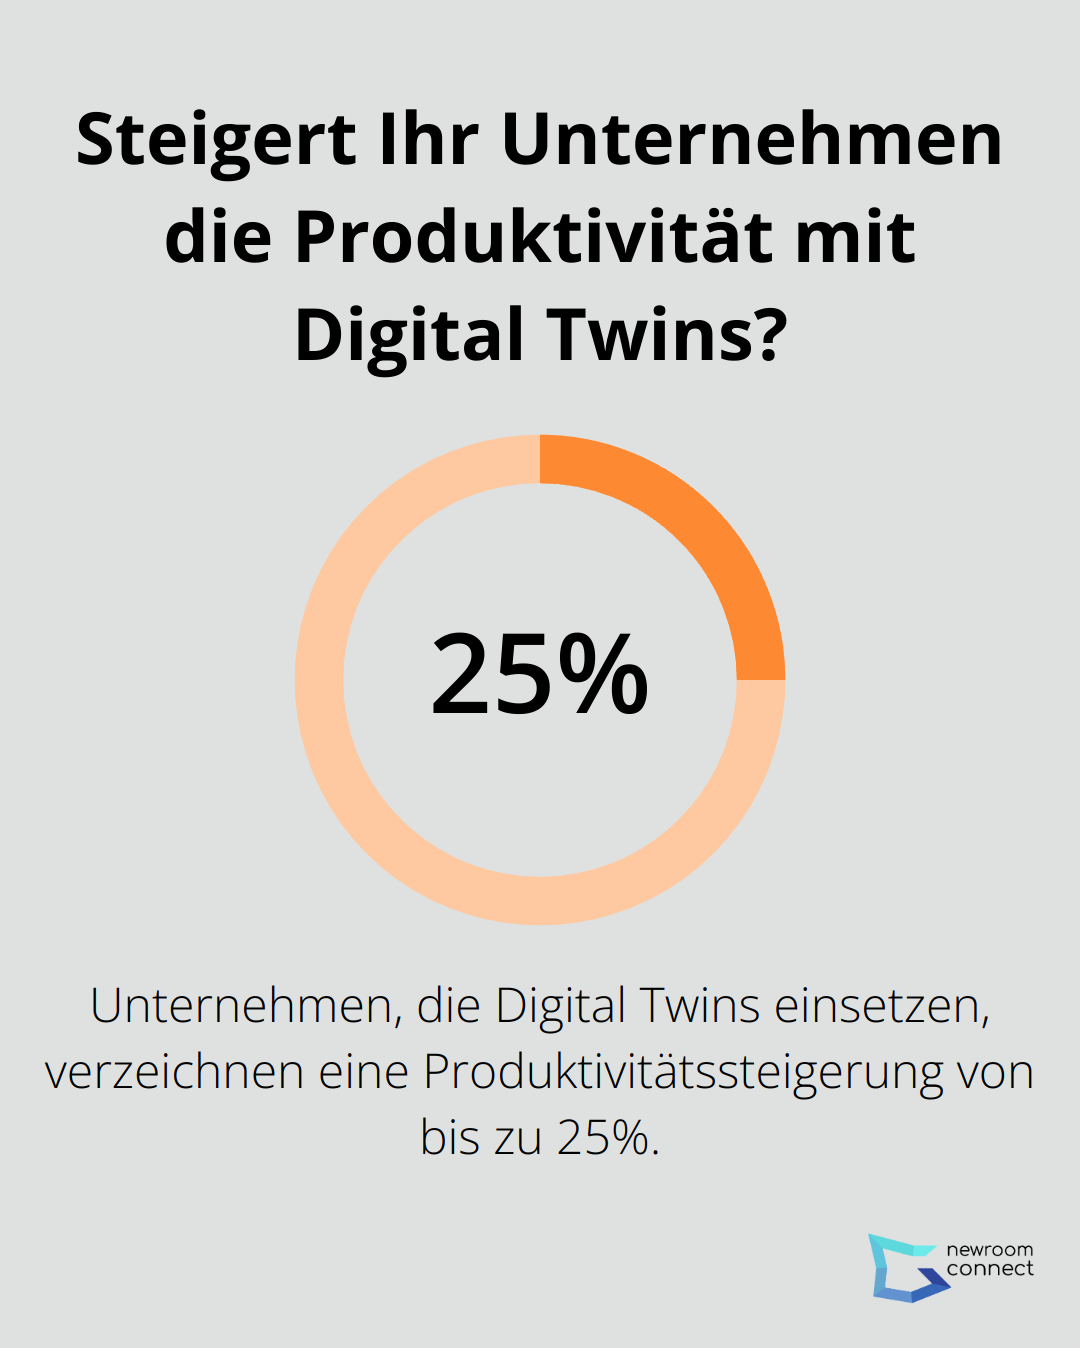 Steigert Ihr Unternehmen die Produktivität mit Digital Twins?